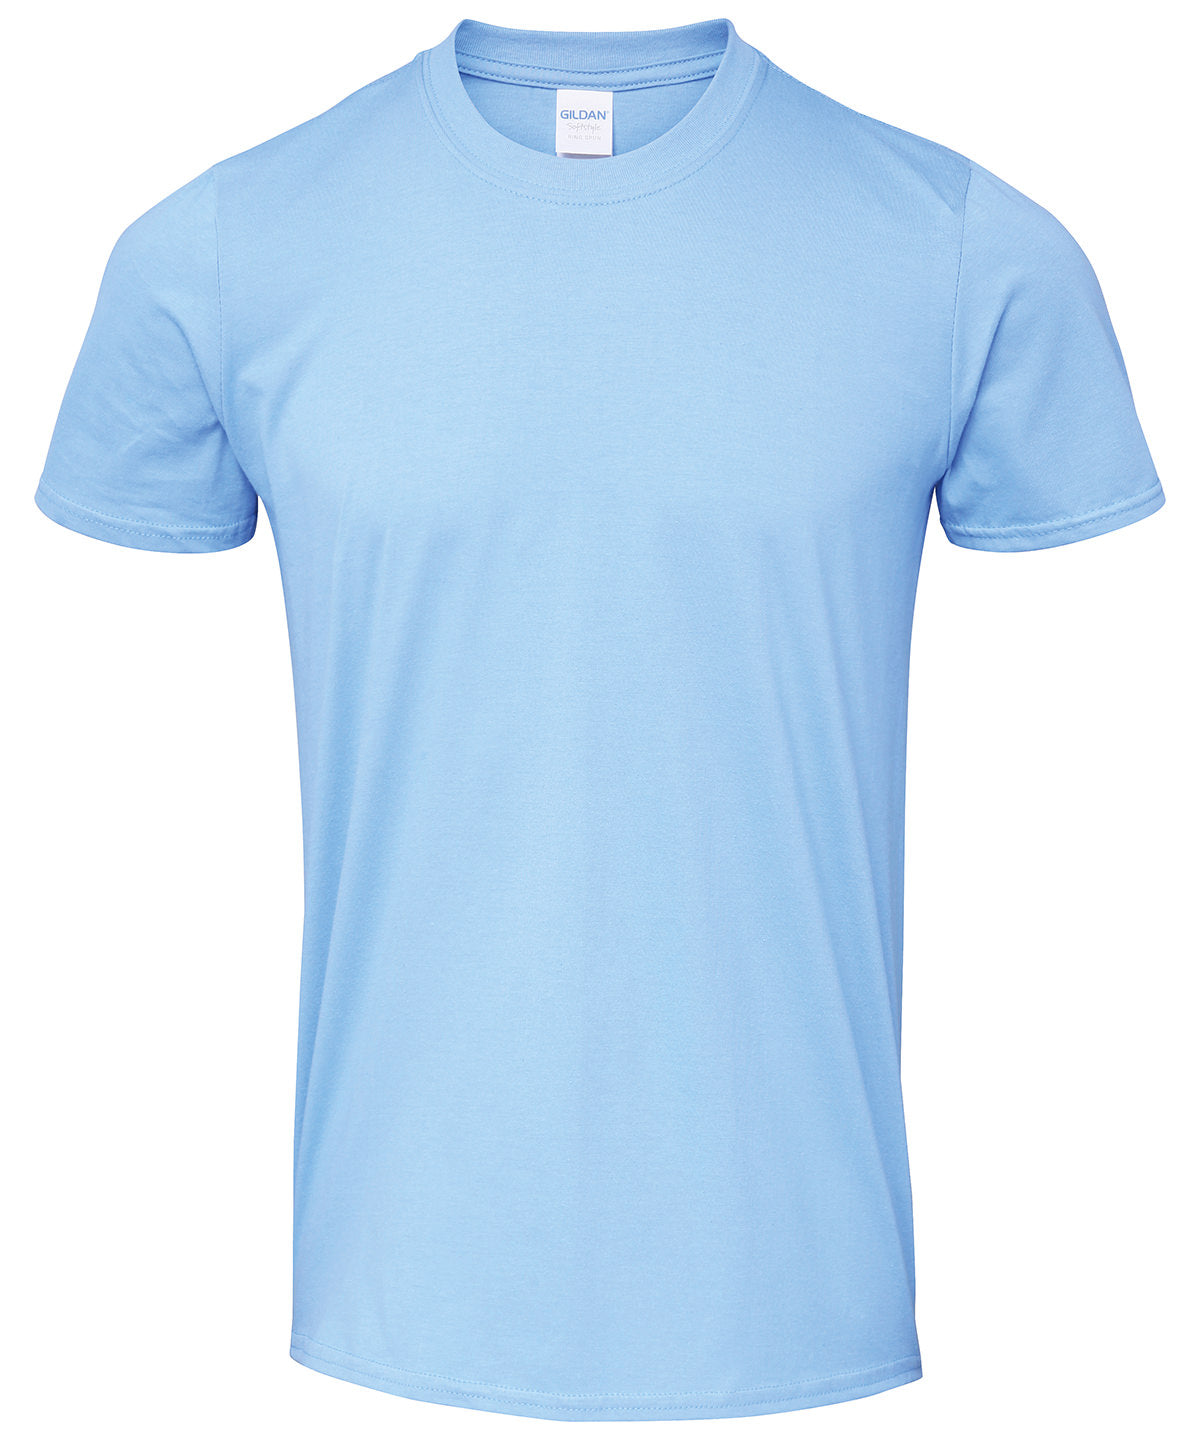 Gildan Softstyle adult ringspun t-shirt Carolina Blue